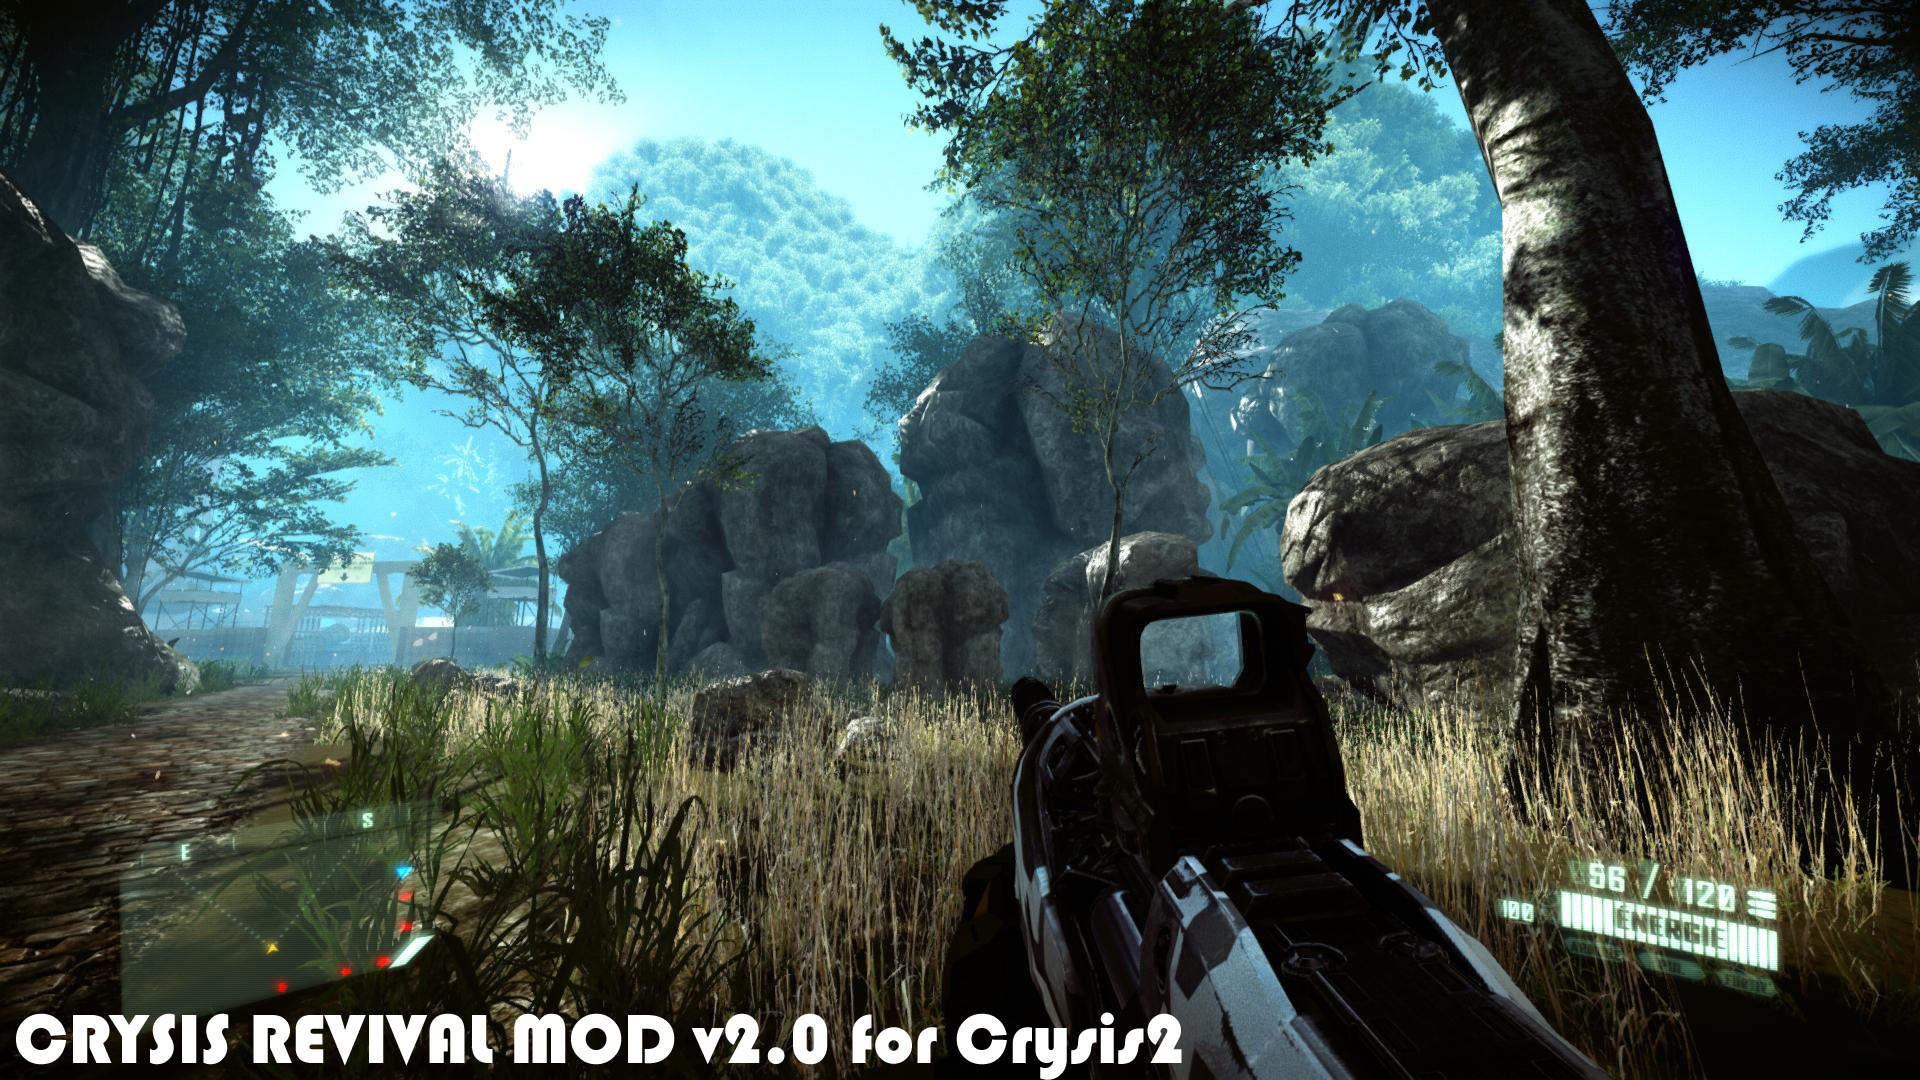 Crysis 3 Free Download - Full Version Game Crack PC